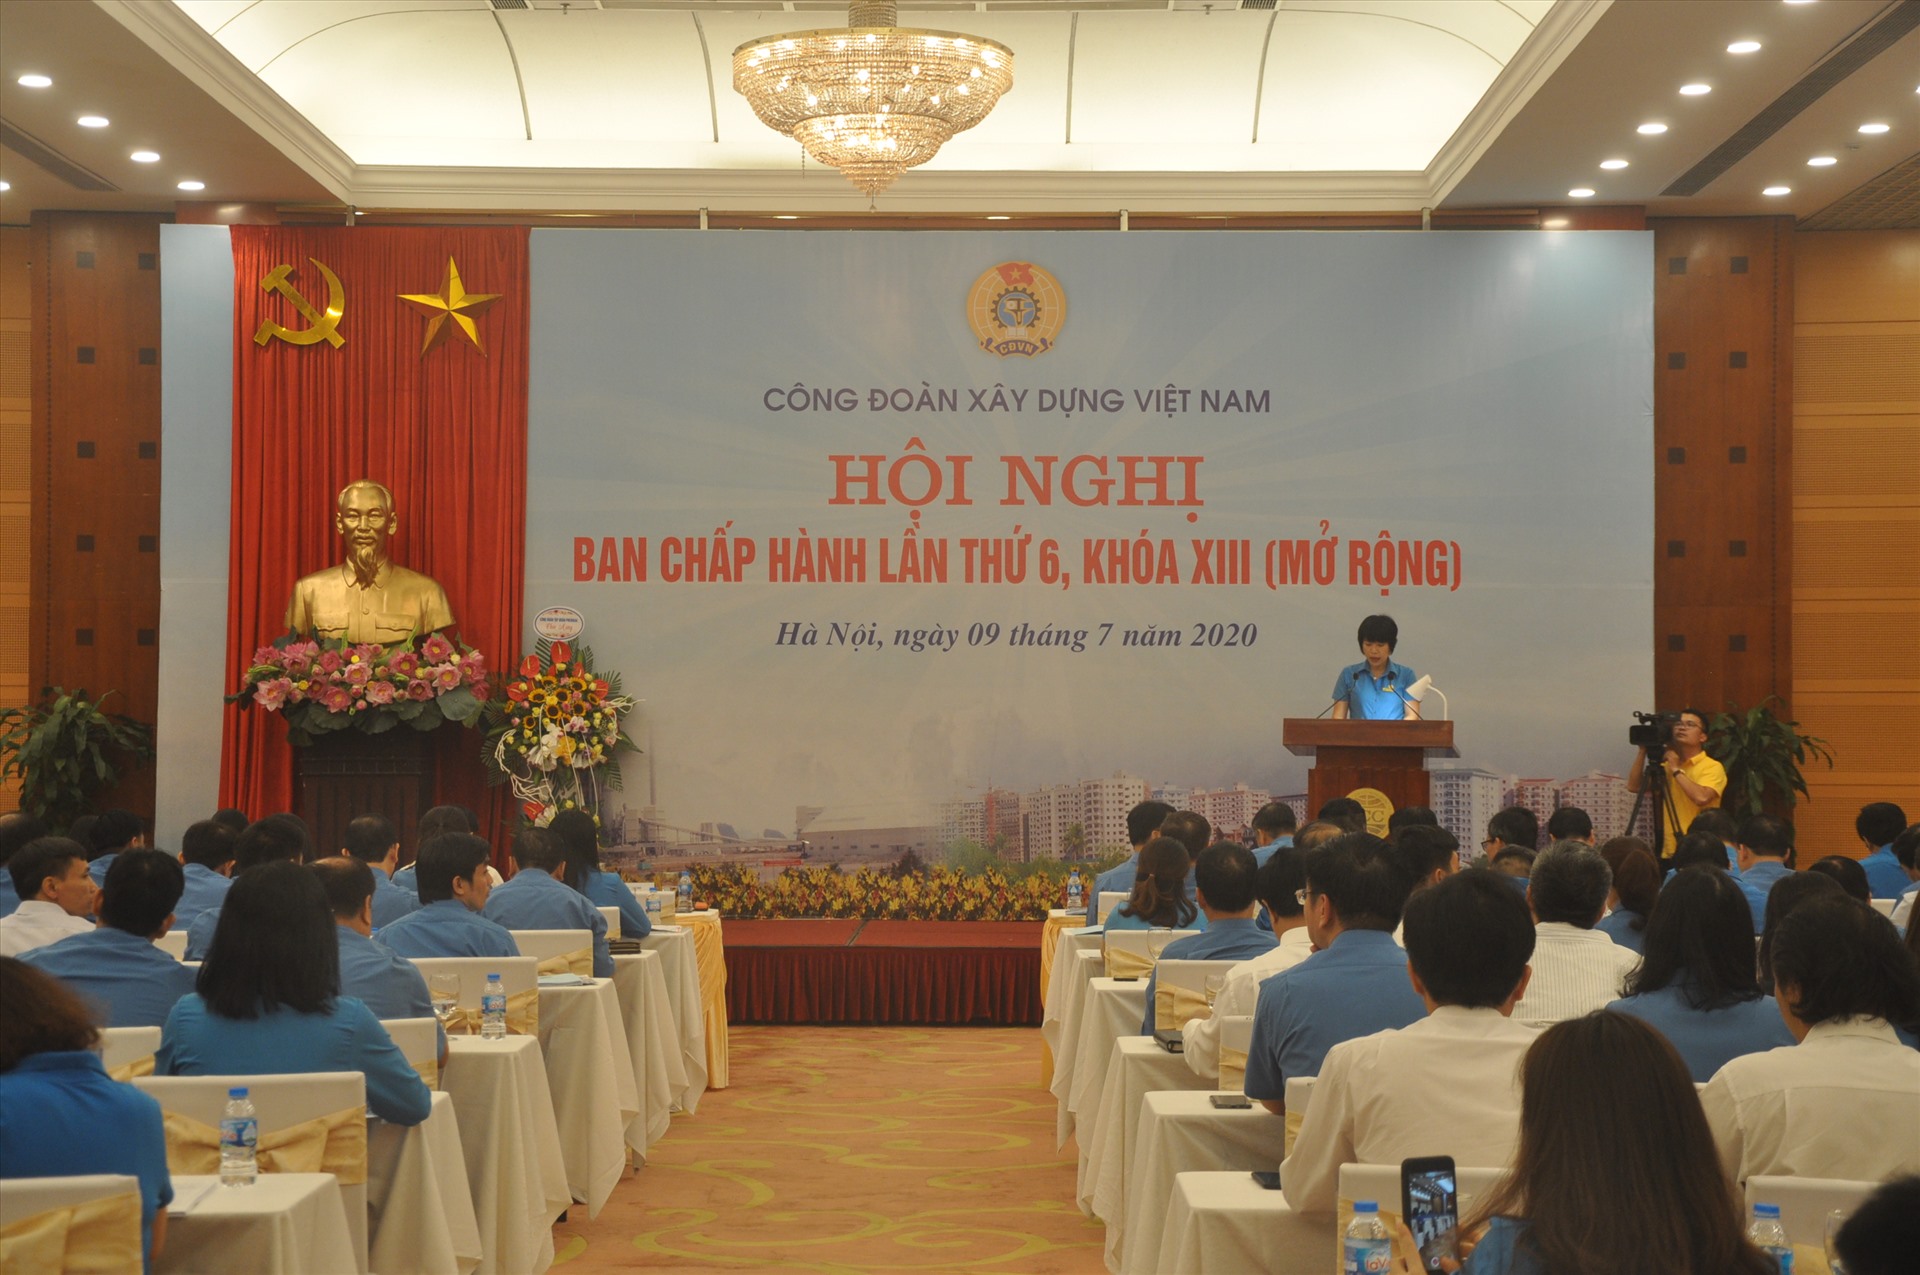 Chủ tịch Công đoàn Xây dựng Việt Nam Nguyễn Thị Thuỷ Lệ phát biểu tại hội nghị. Ảnh: Bảo Hân.